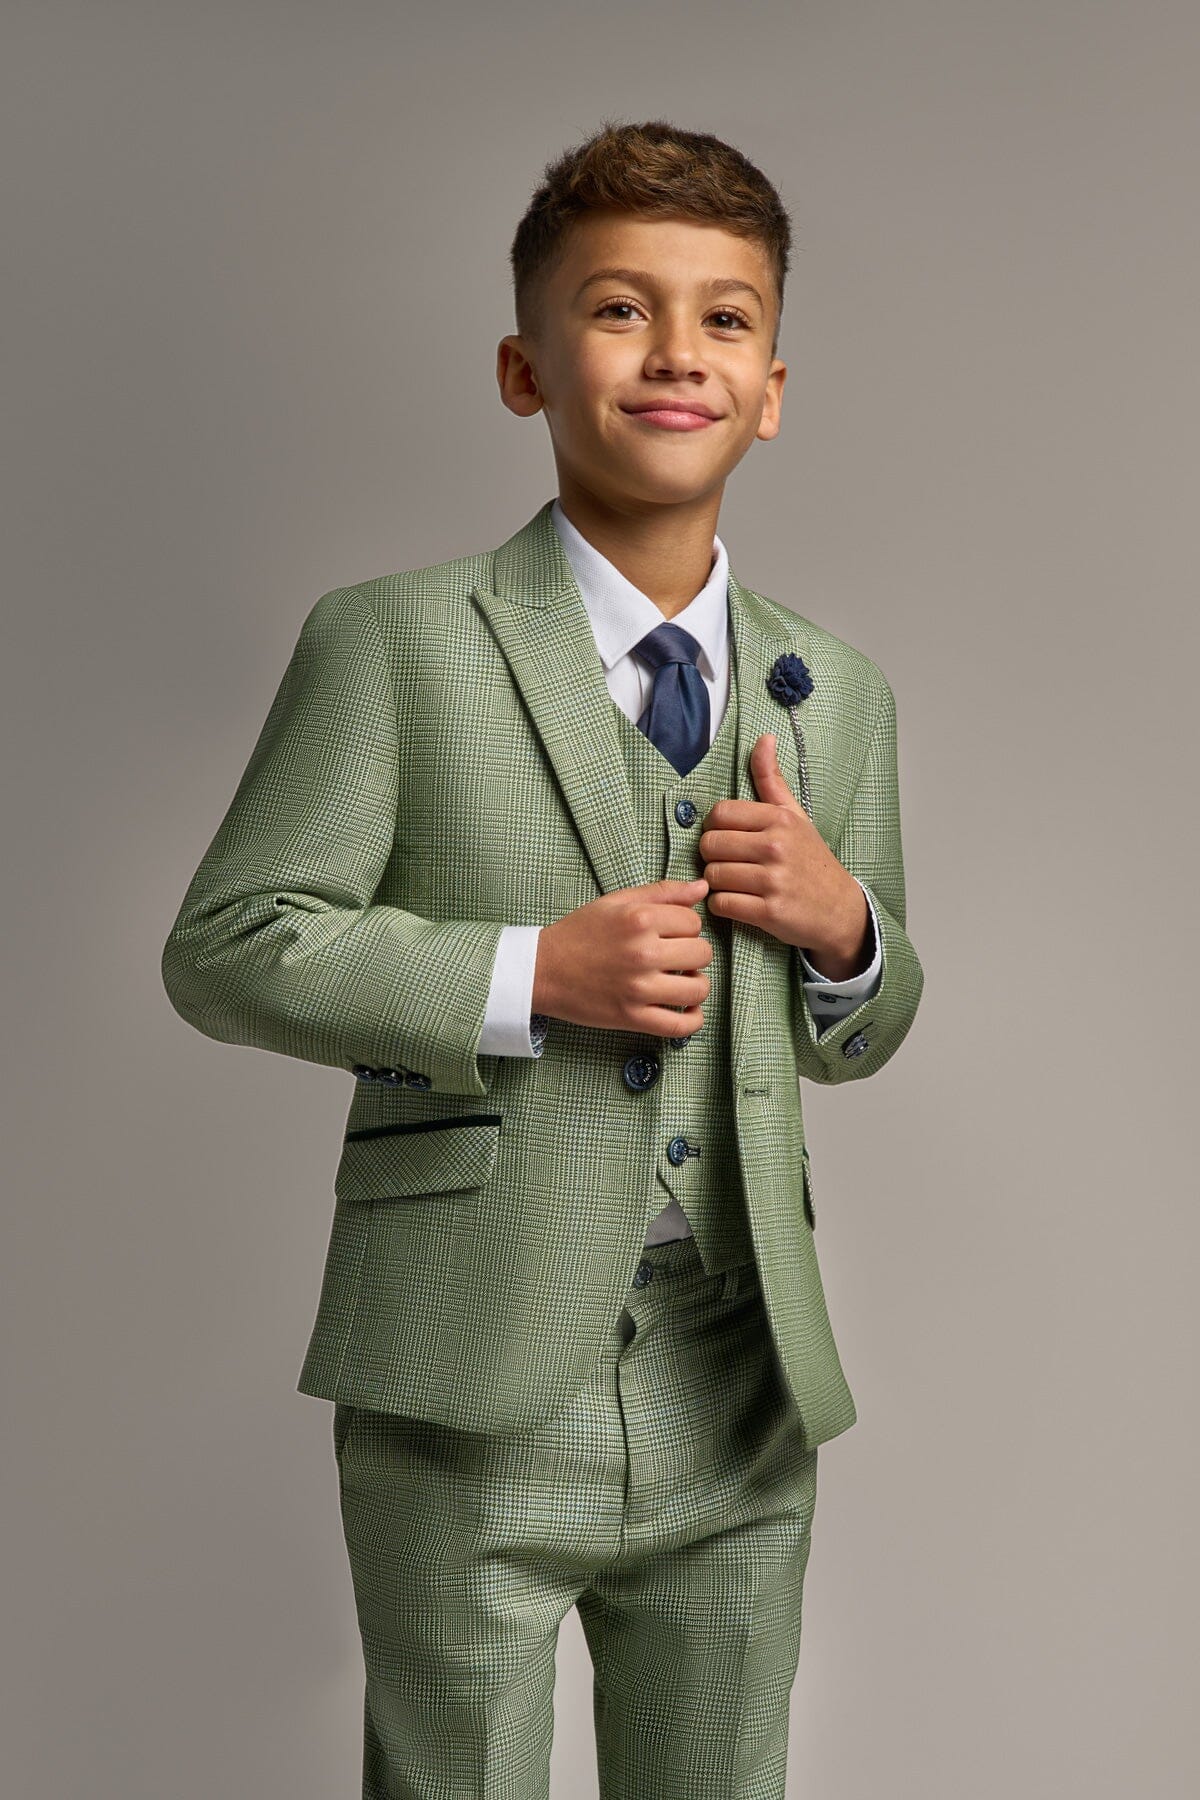 Caridi Sage Boys 3 Piece Suit - Childrenswear - 